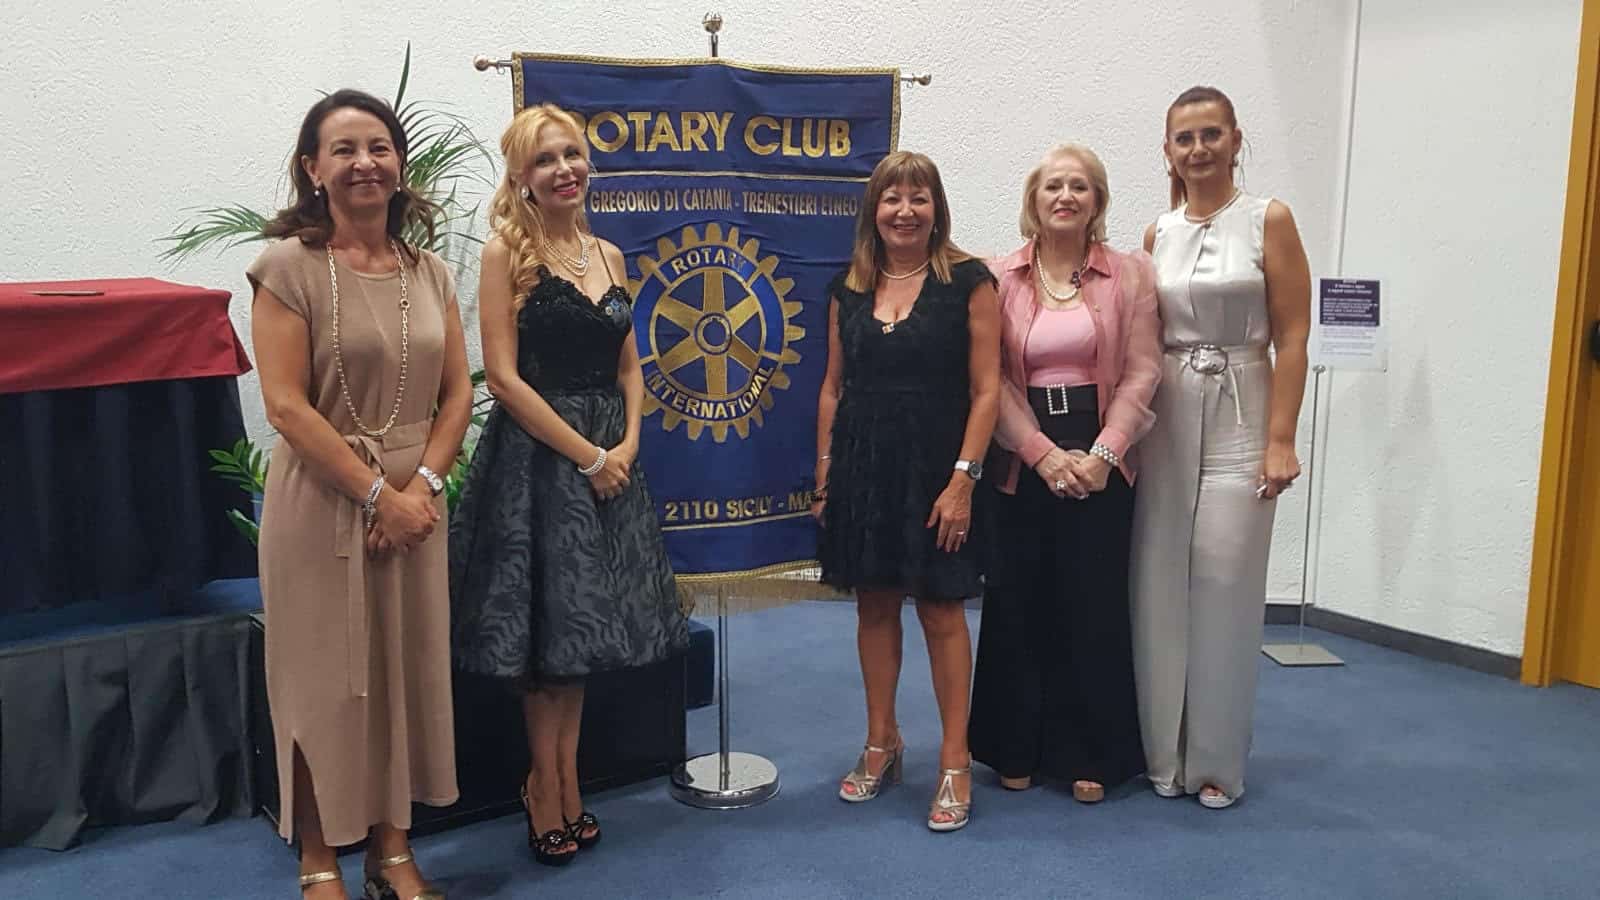 Rotary Club San Gregorio di Catania-Tremestieri Etneo, svolto il passaggio della campana: Cinzia Torrisi confermata presidente